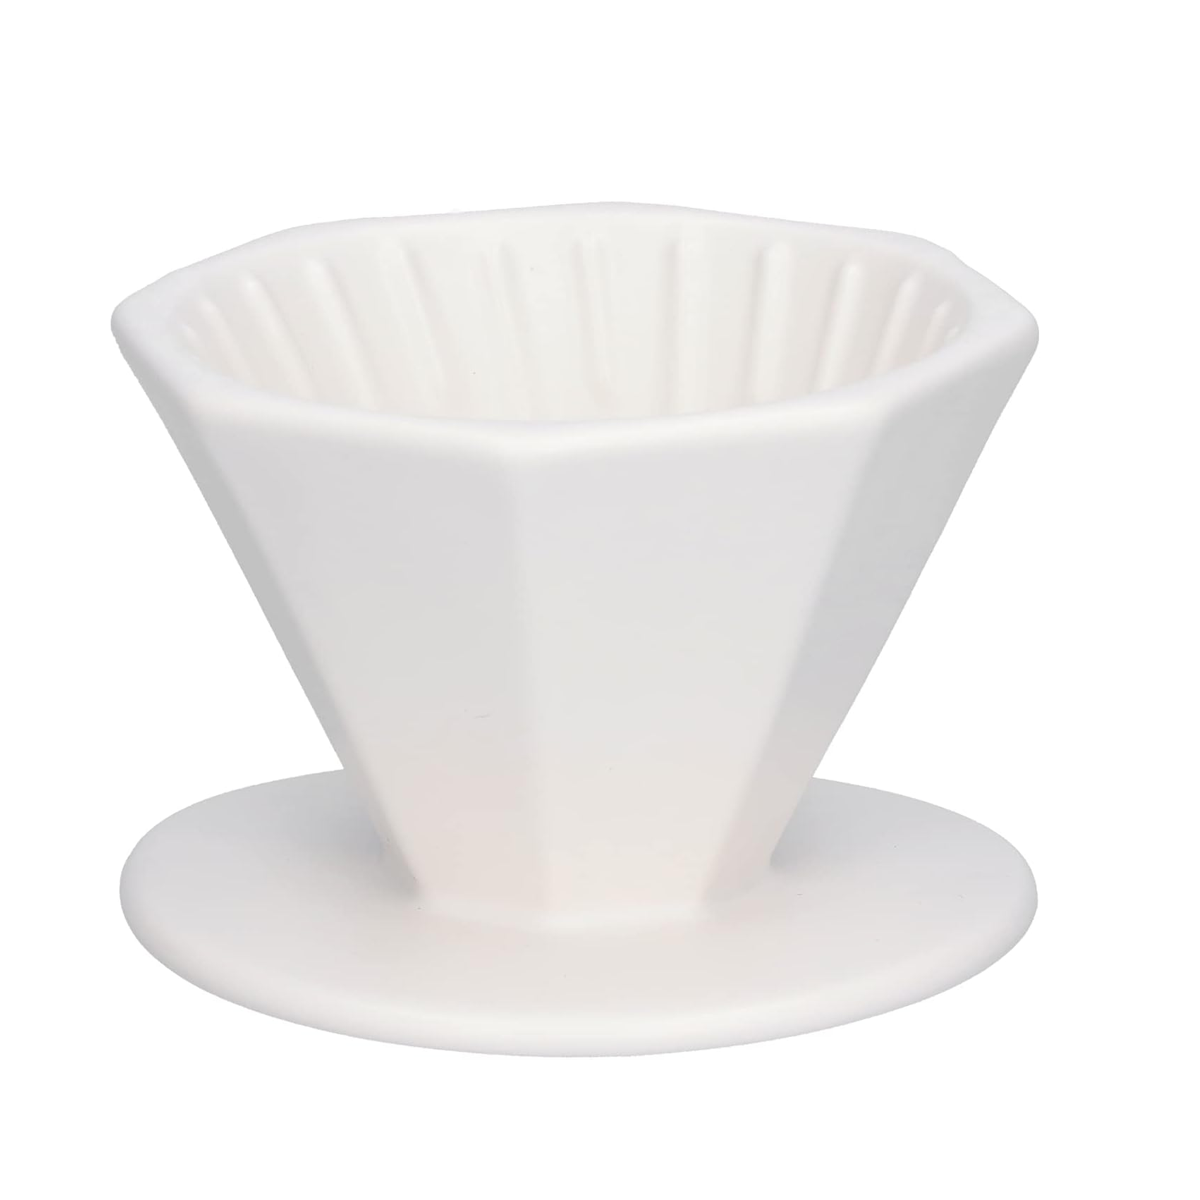 Barista Ceramic Coffee Filter Cup Driper 1-2 cups & 3-4 cups